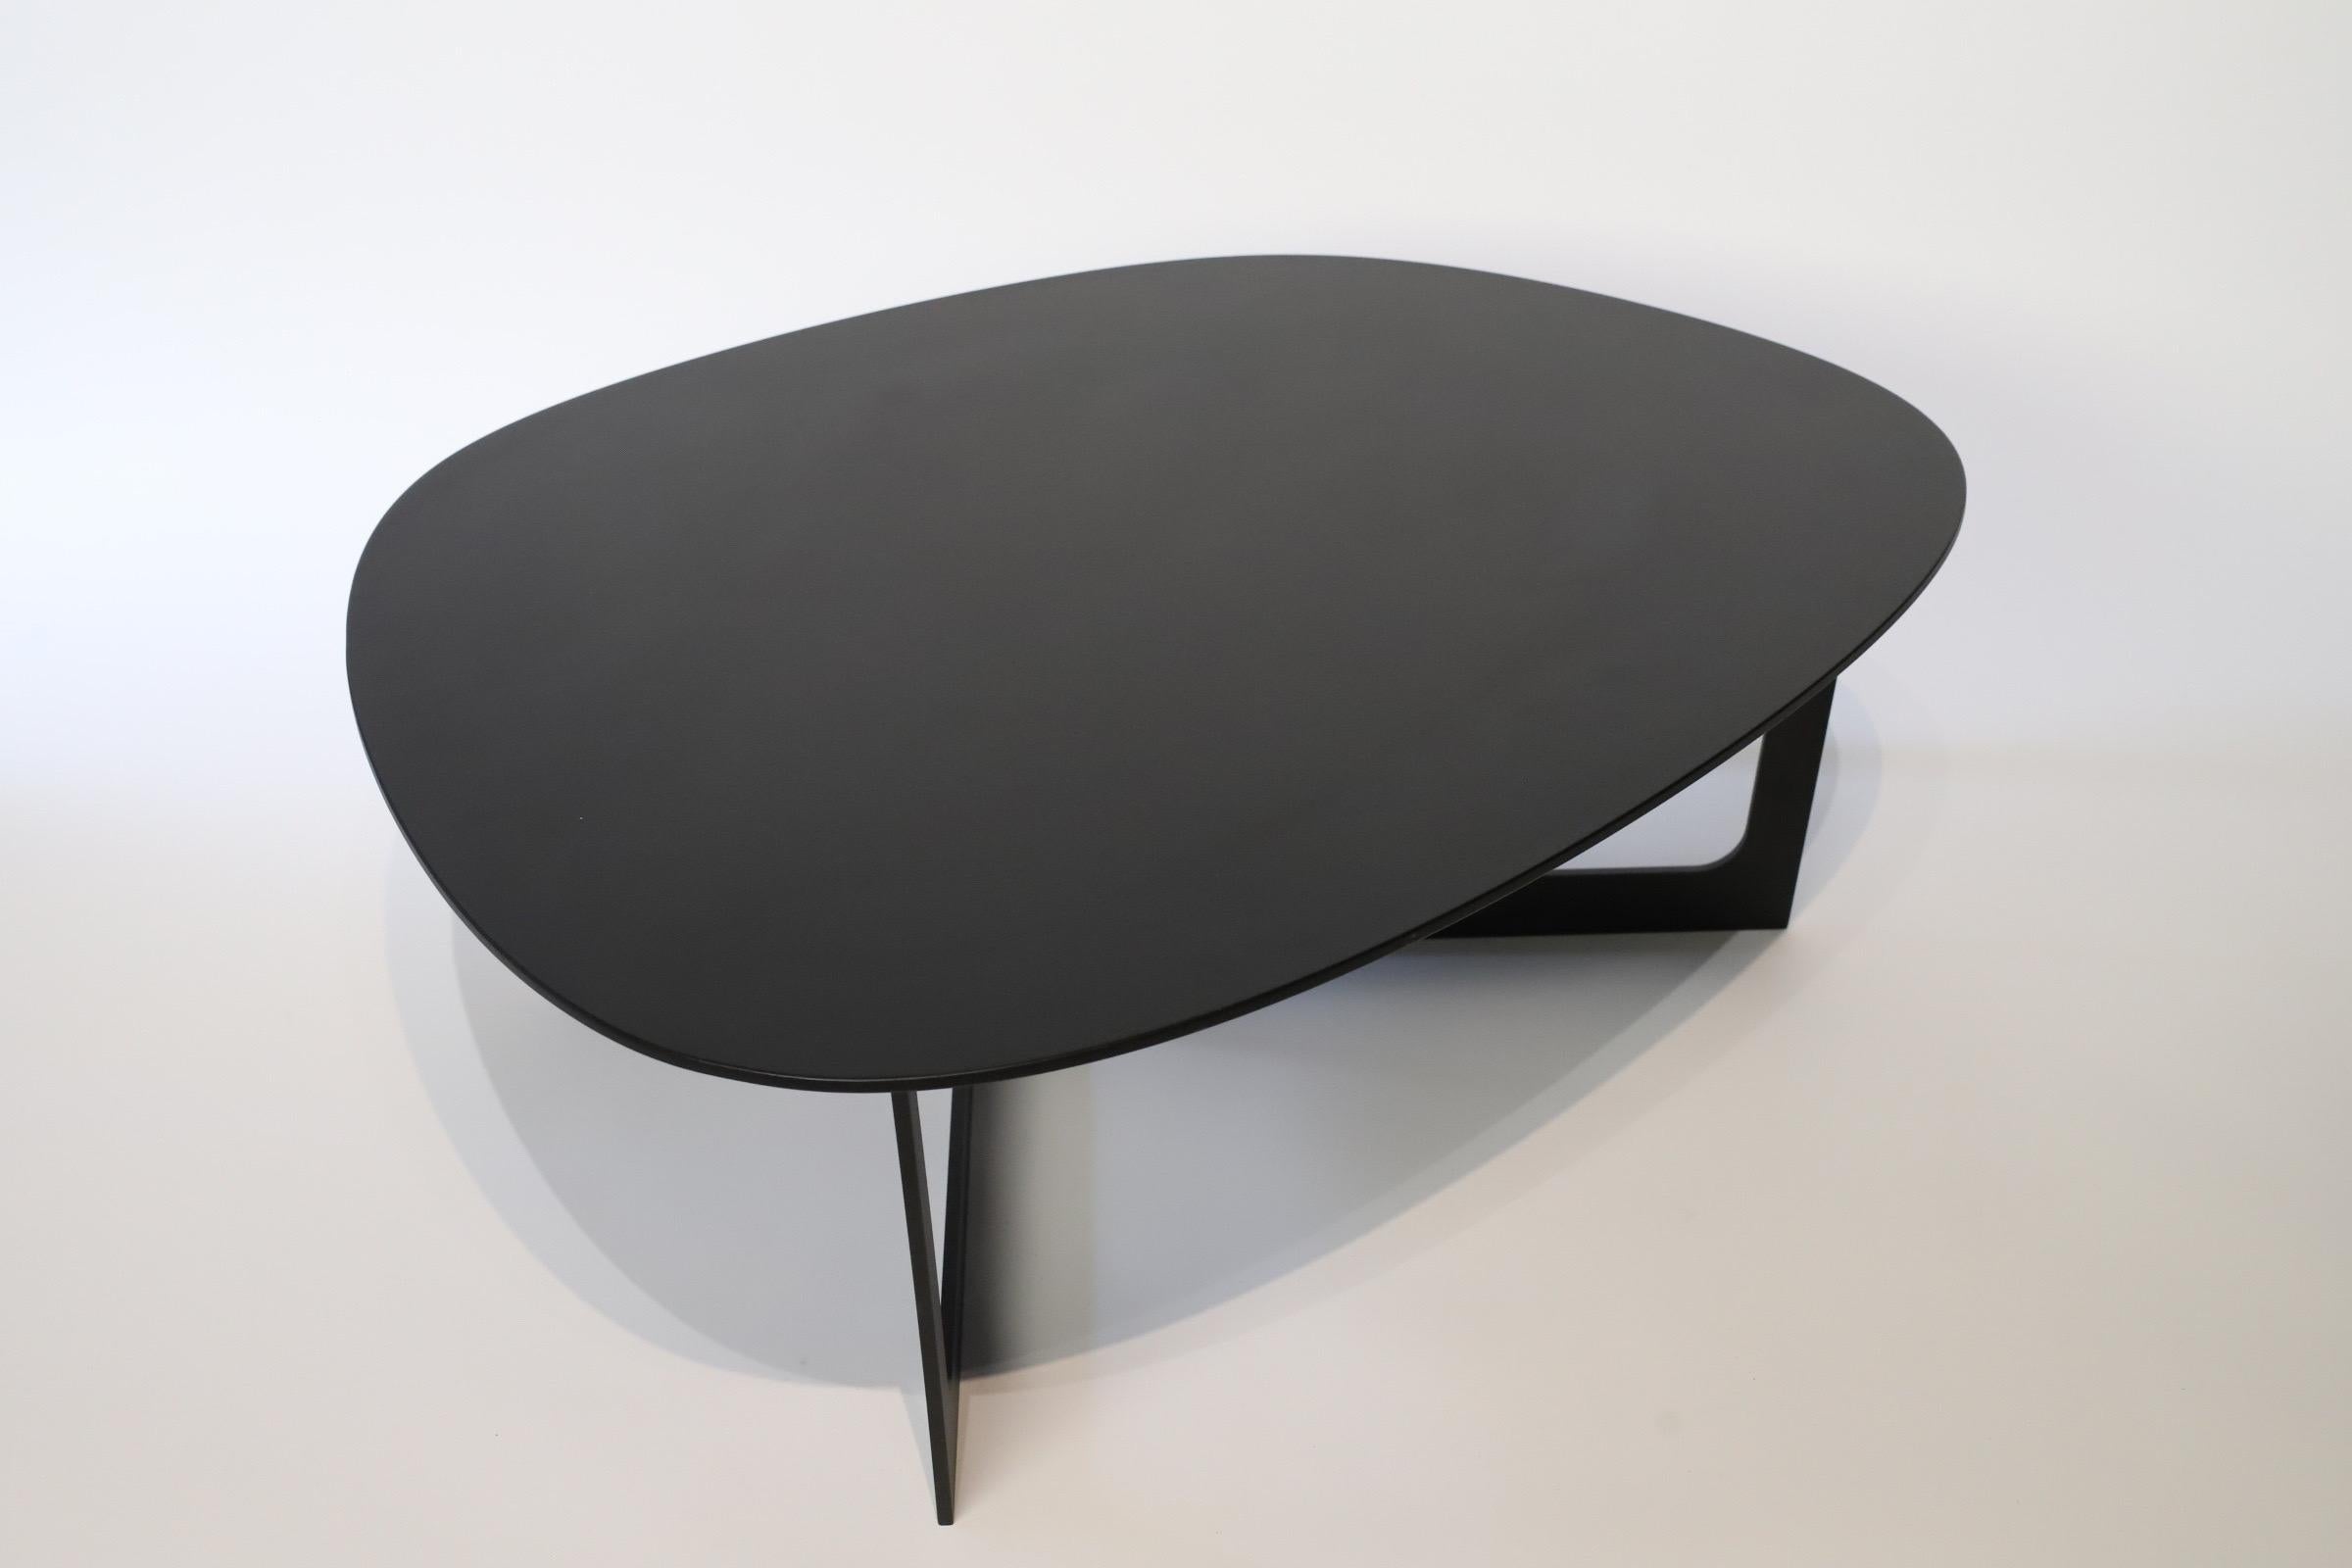 Der Insula Cocktail- oder Beistelltisch, entworfen von Ernst & Jensen für Erik Jorgensen, ist ein atemberaubendes Stück, das Form und Funktion nahtlos miteinander verbindet. Dieser mit viel Liebe zum Detail gefertigte Tisch verkörpert die Essenz des